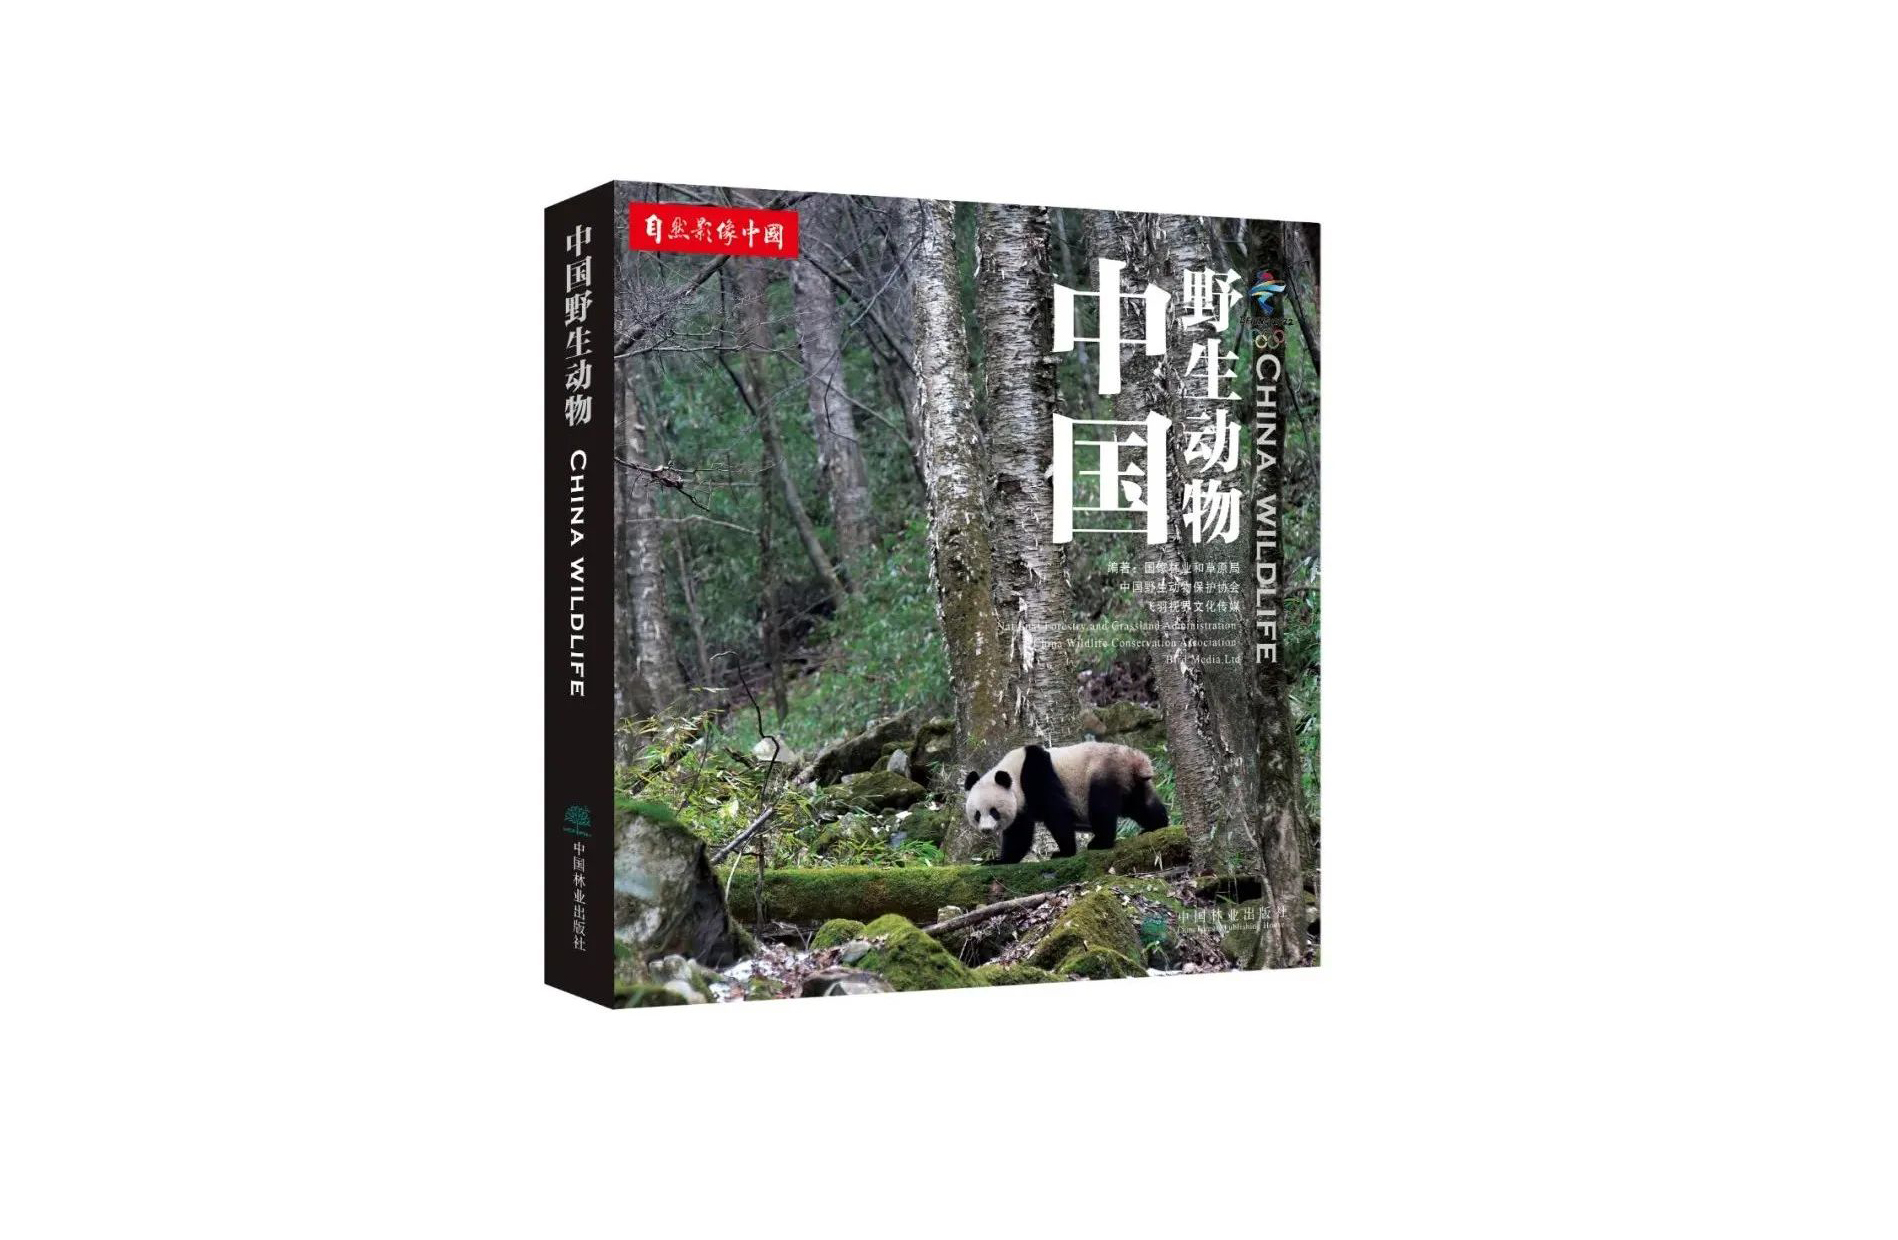 中国野生动物保护协会收到北京冬奥组委的感谢信